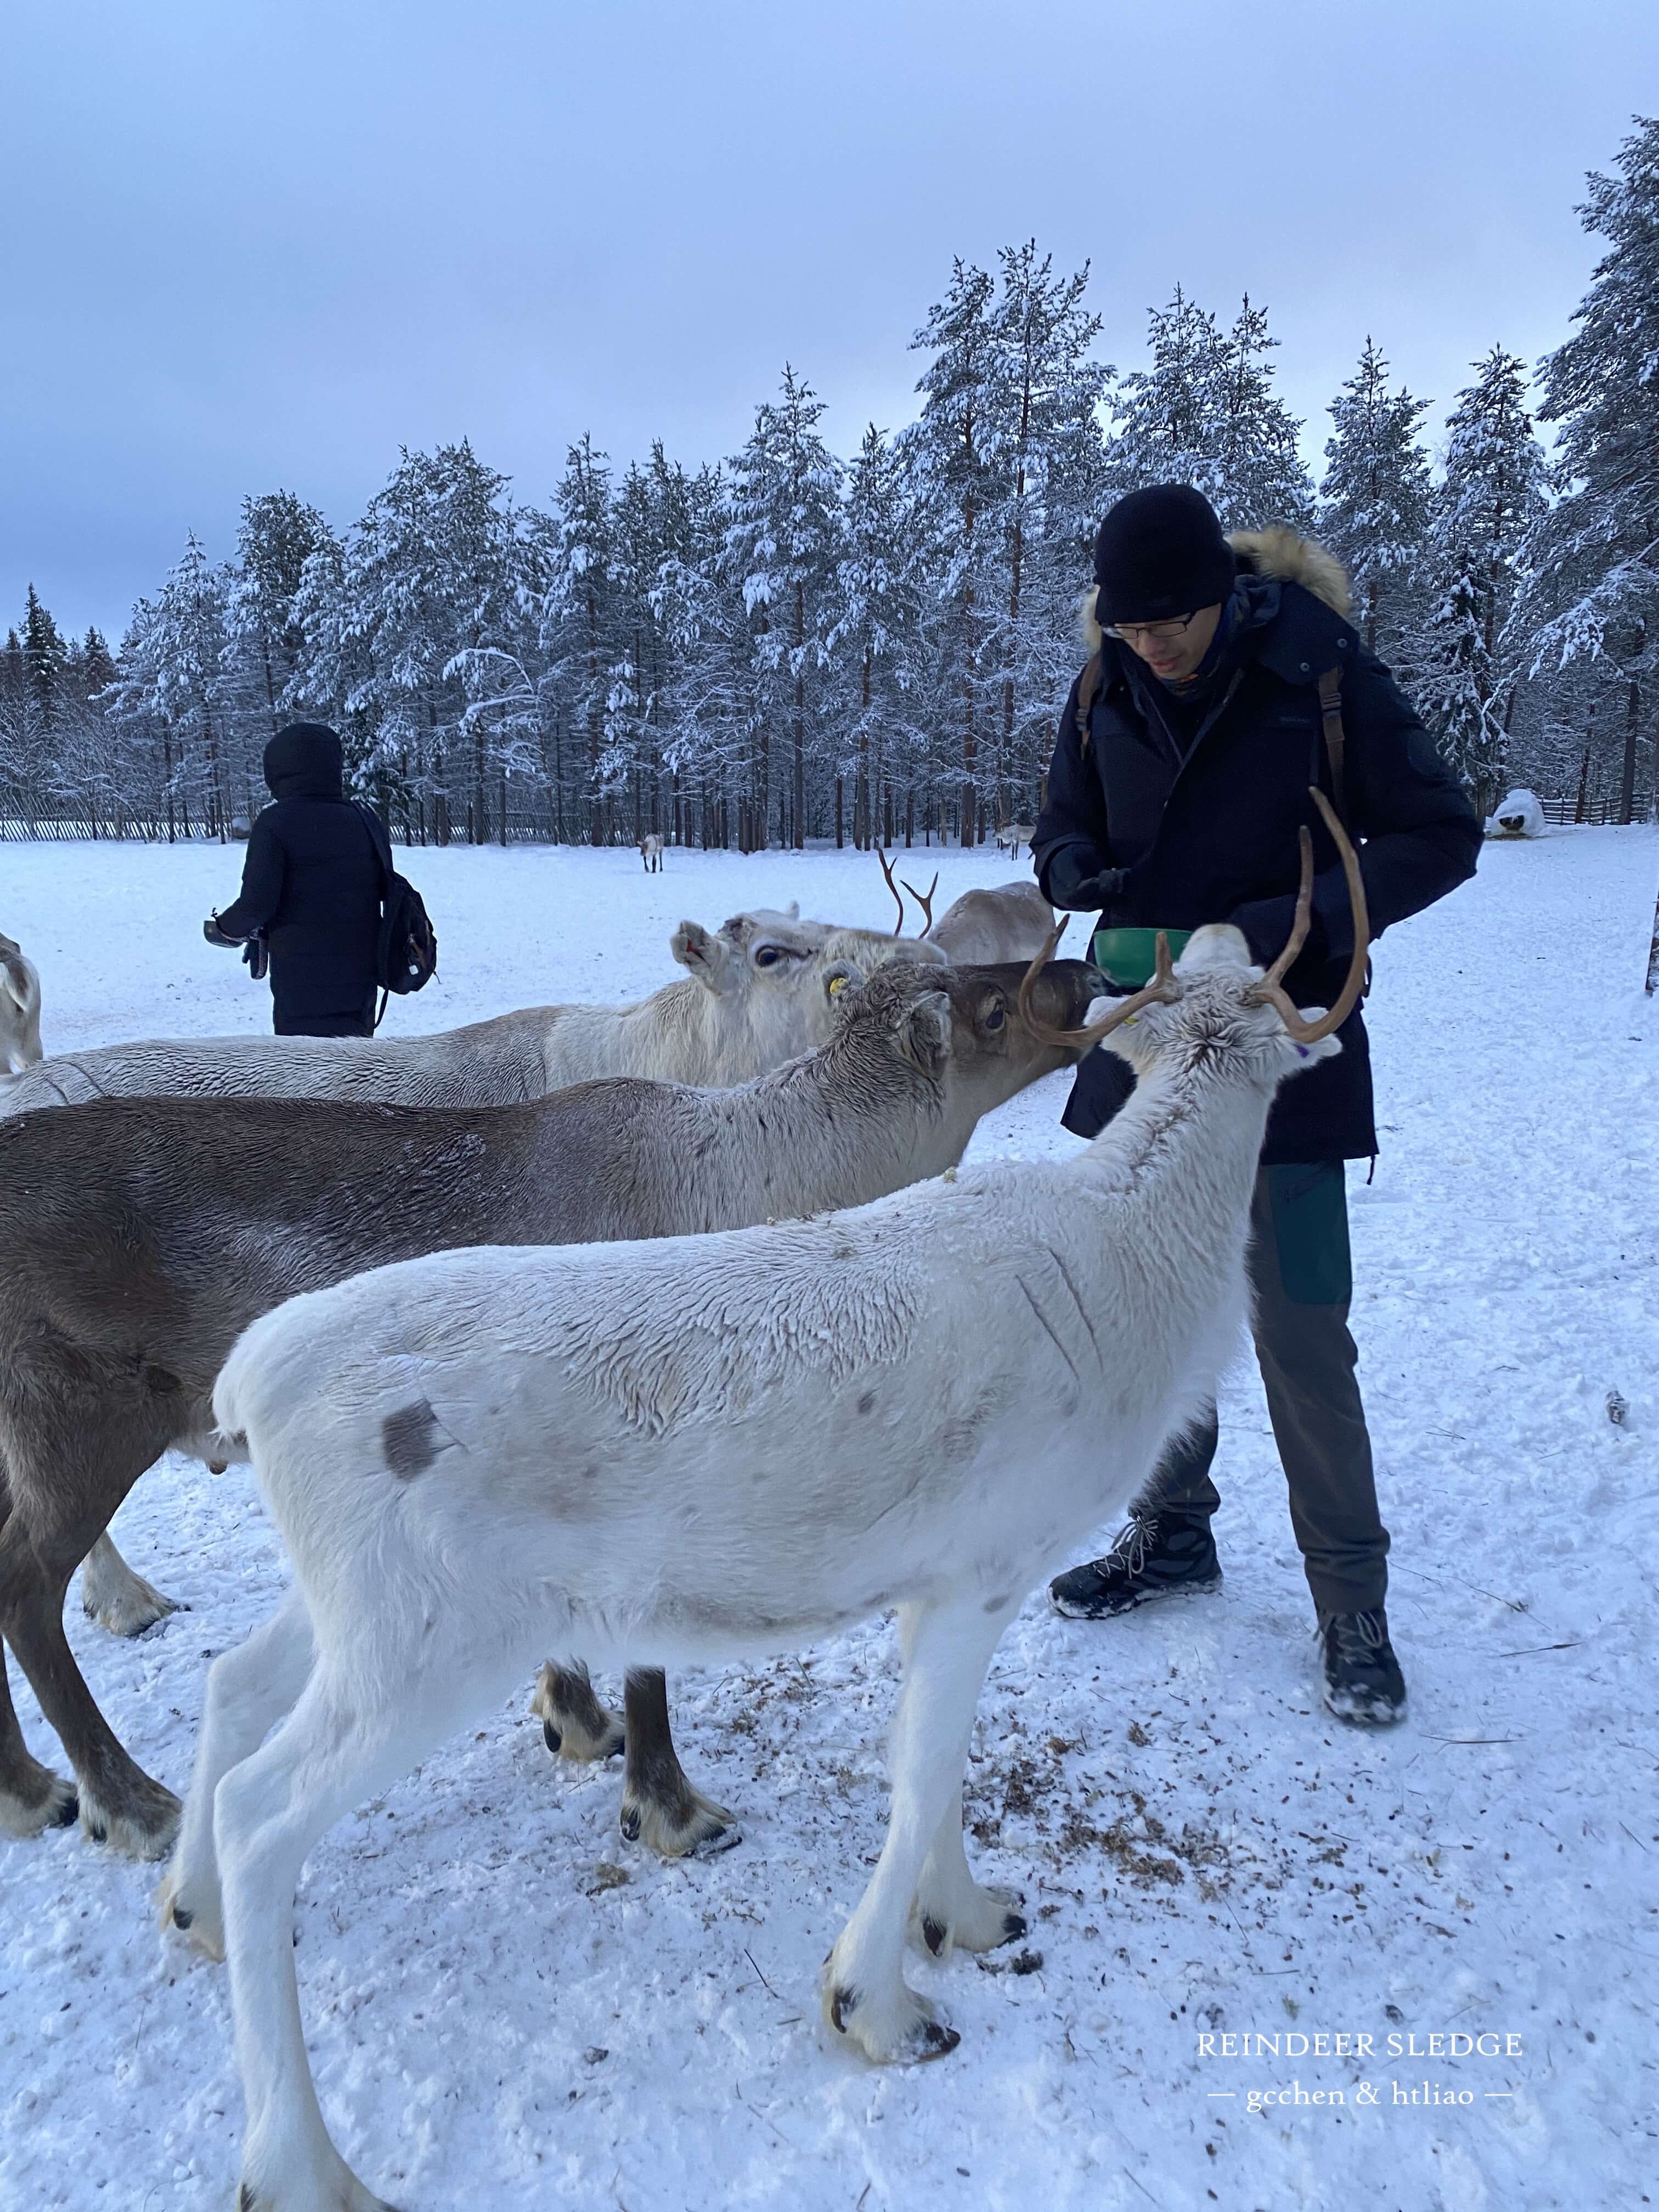 reindeer sledge 馴鹿雪橇